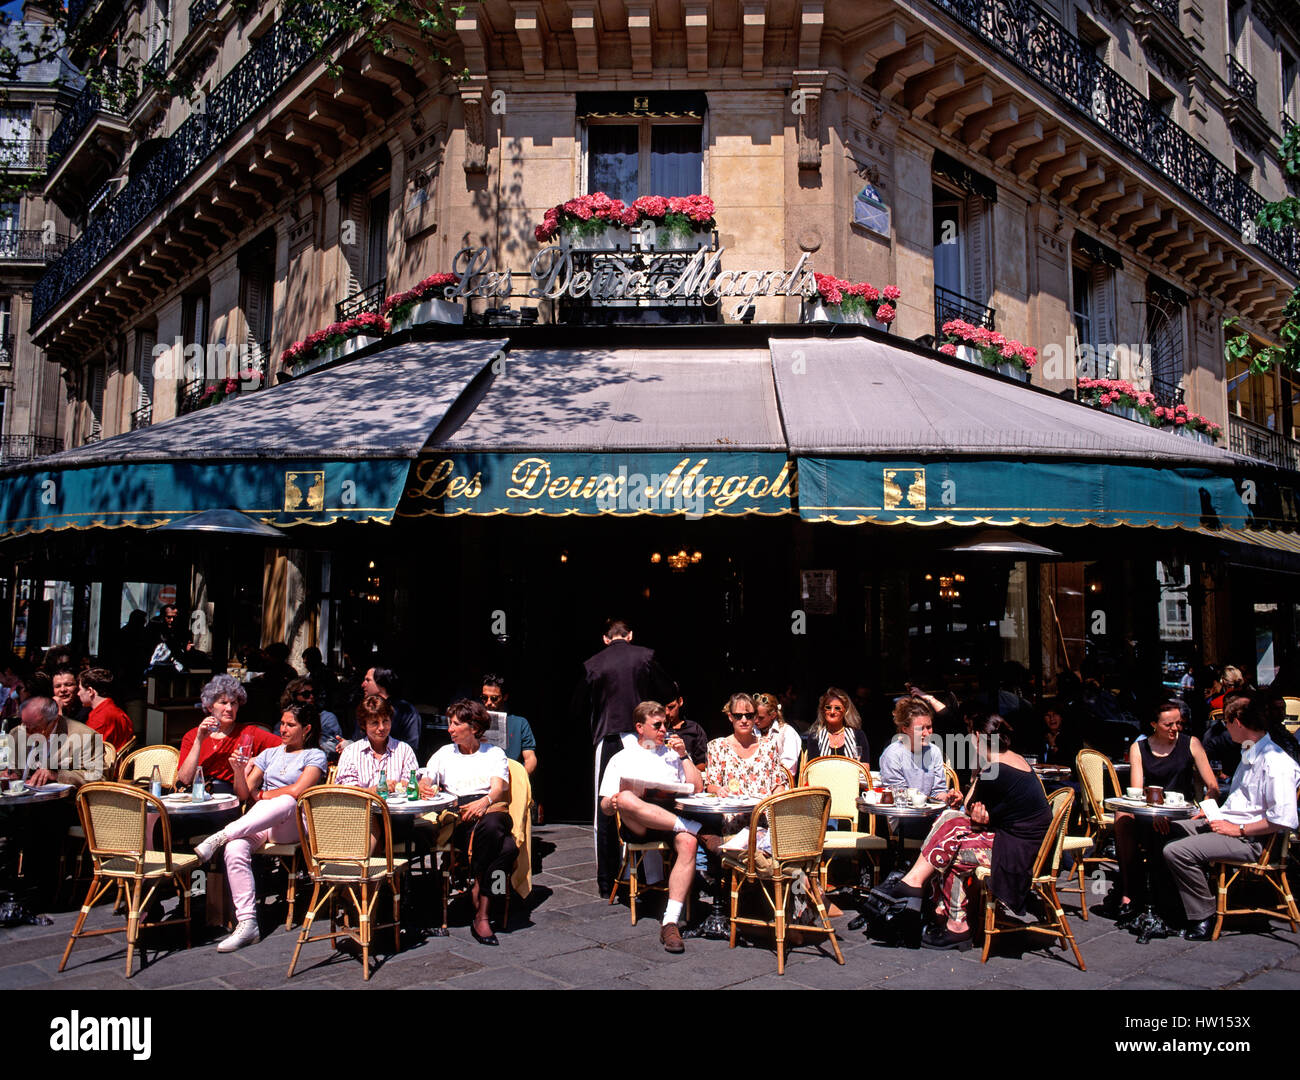 Les Deux Magots pavement cafe, Paris, France Stock Photo